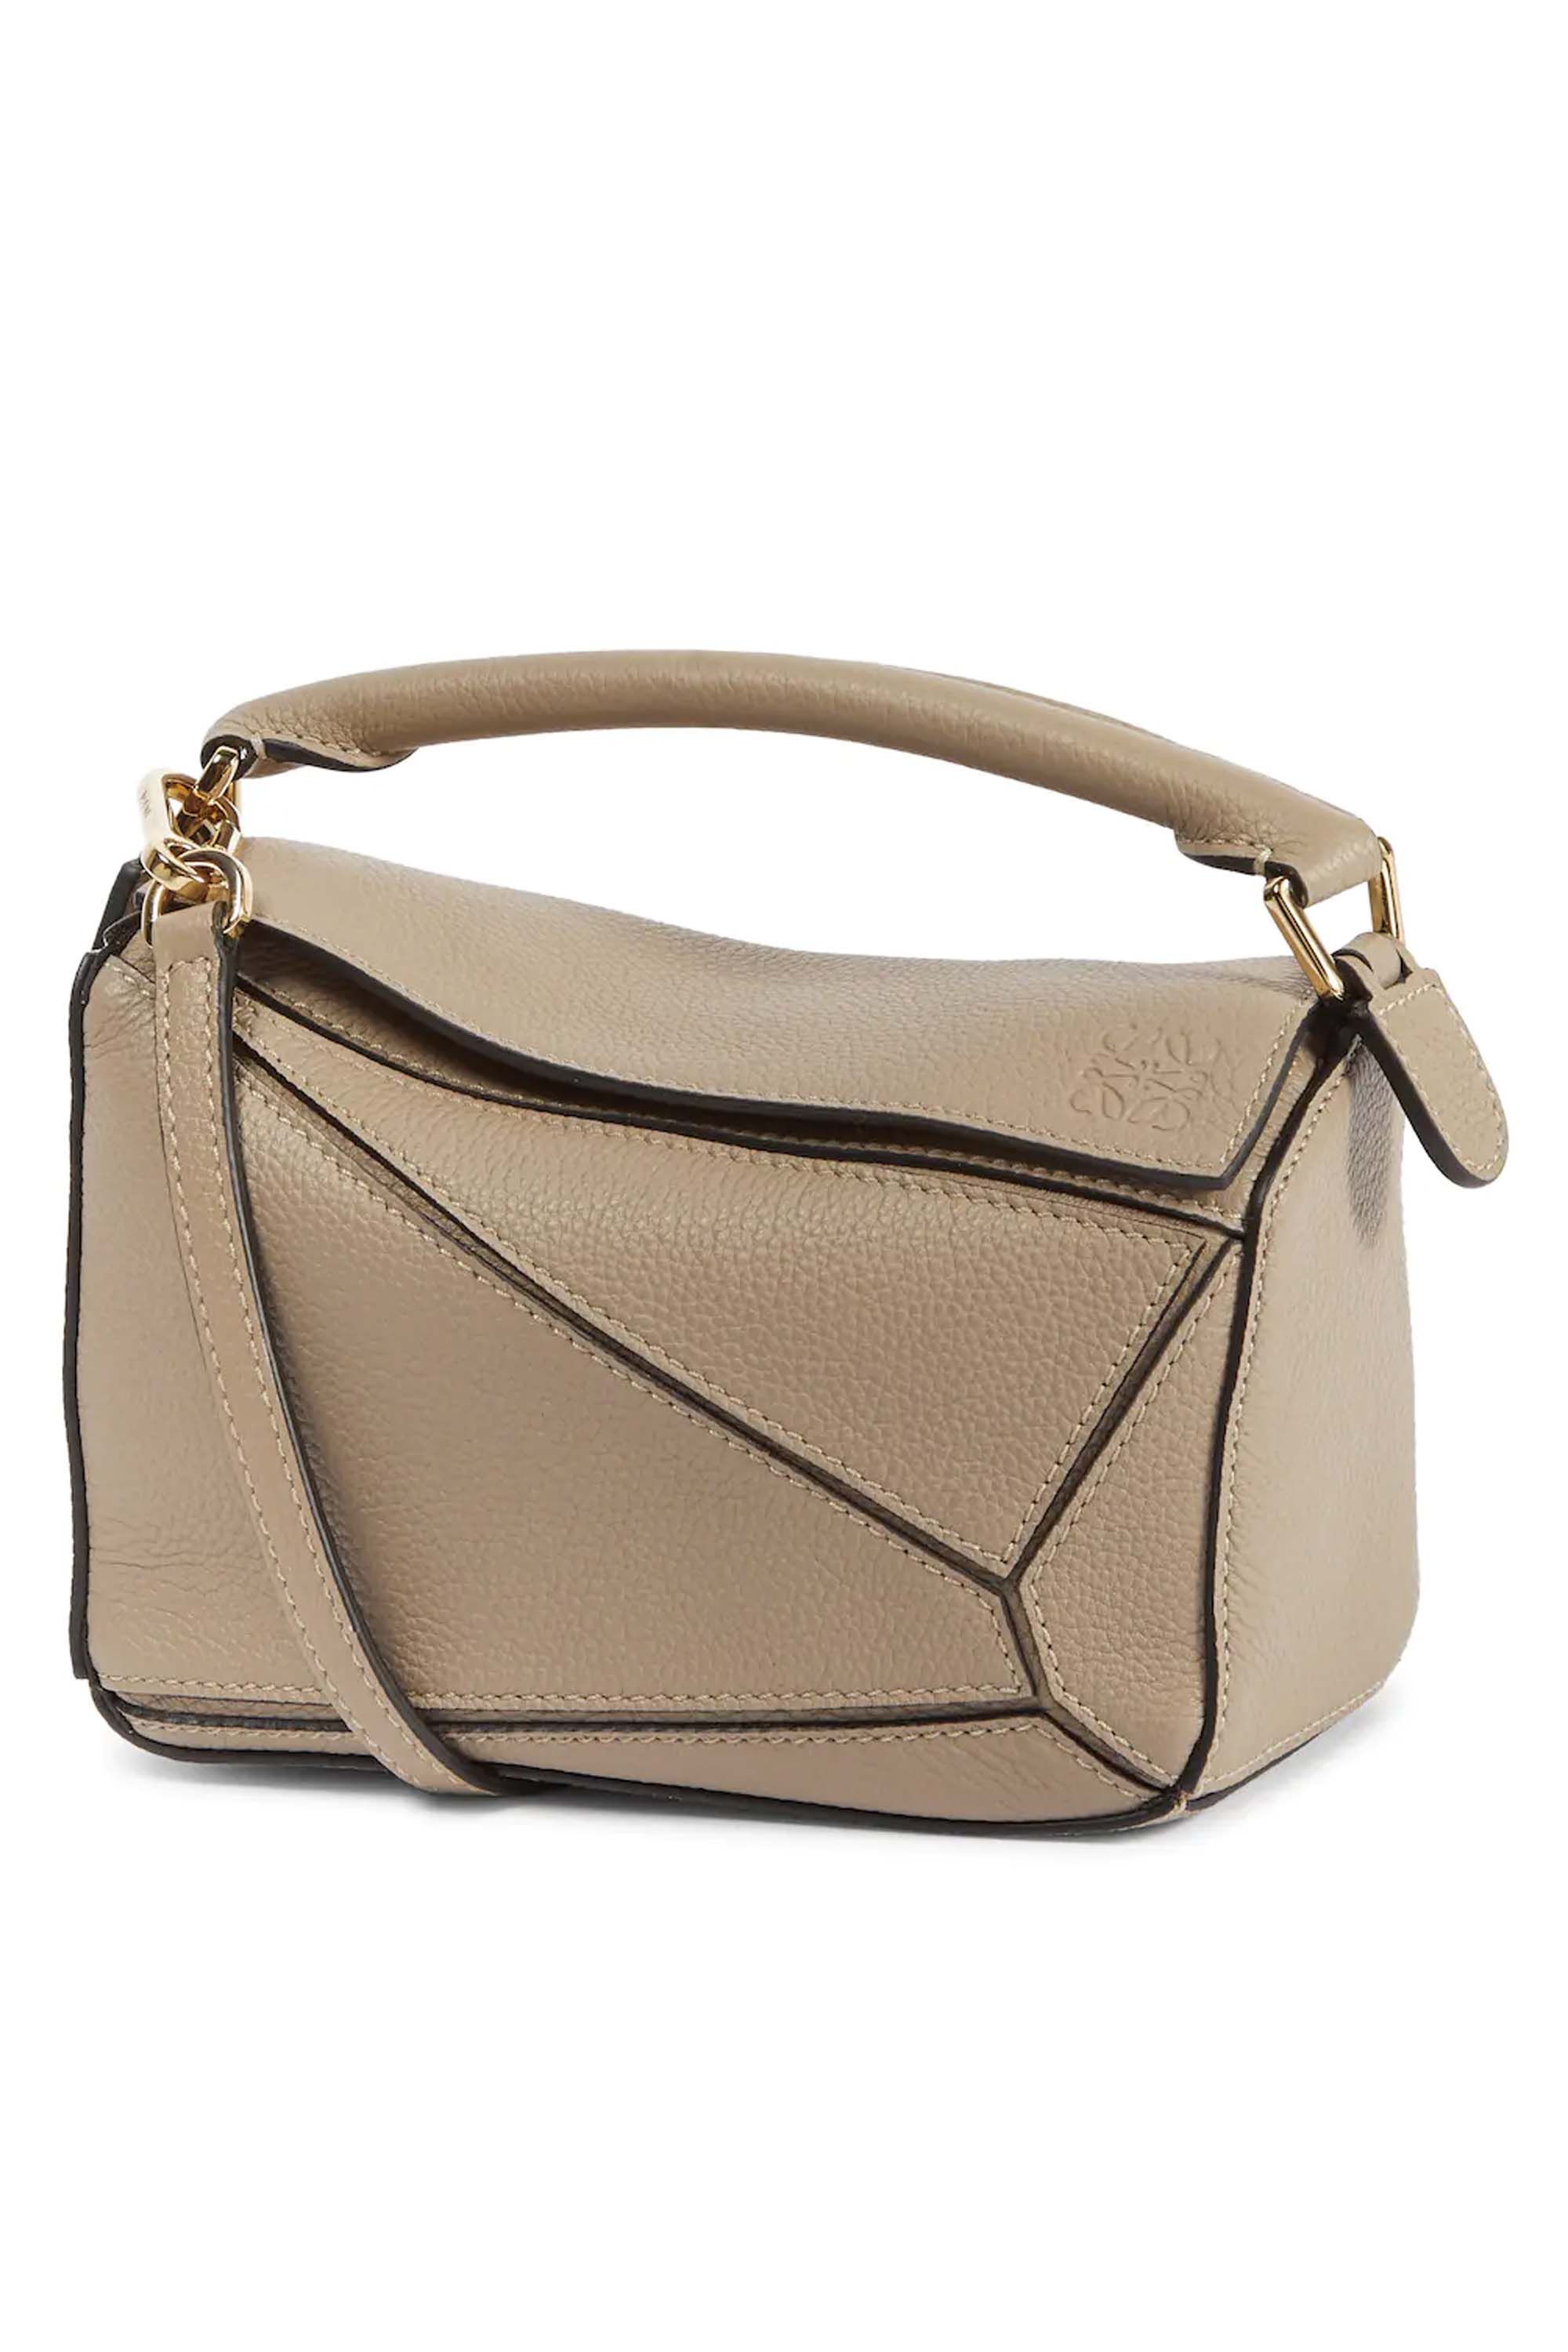 luxury top 10 popular handbag brands